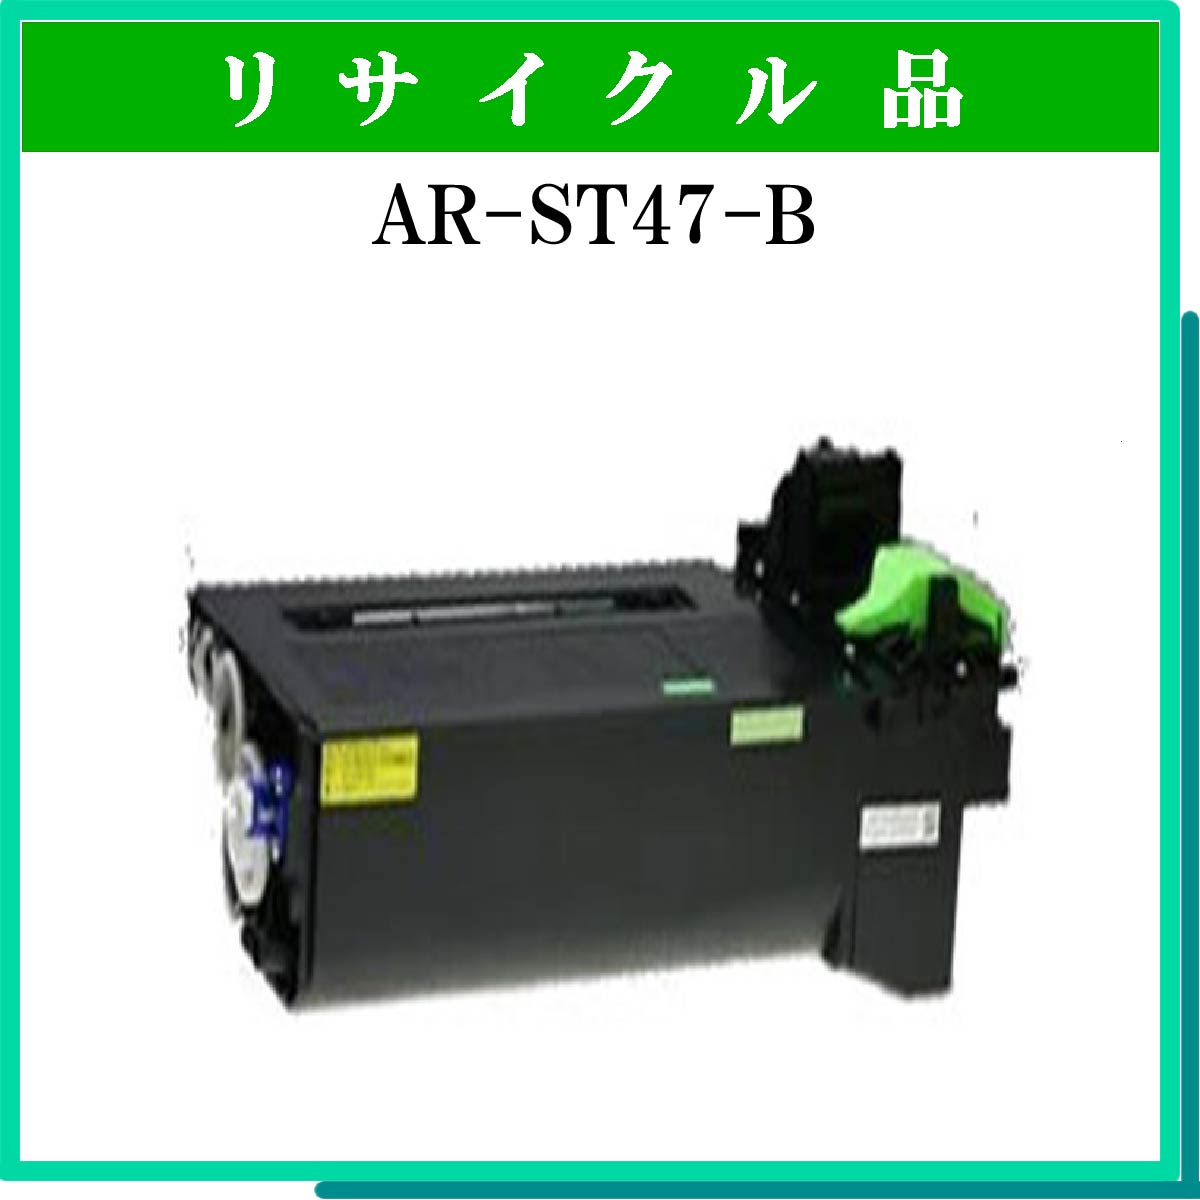 AR-ST47-B